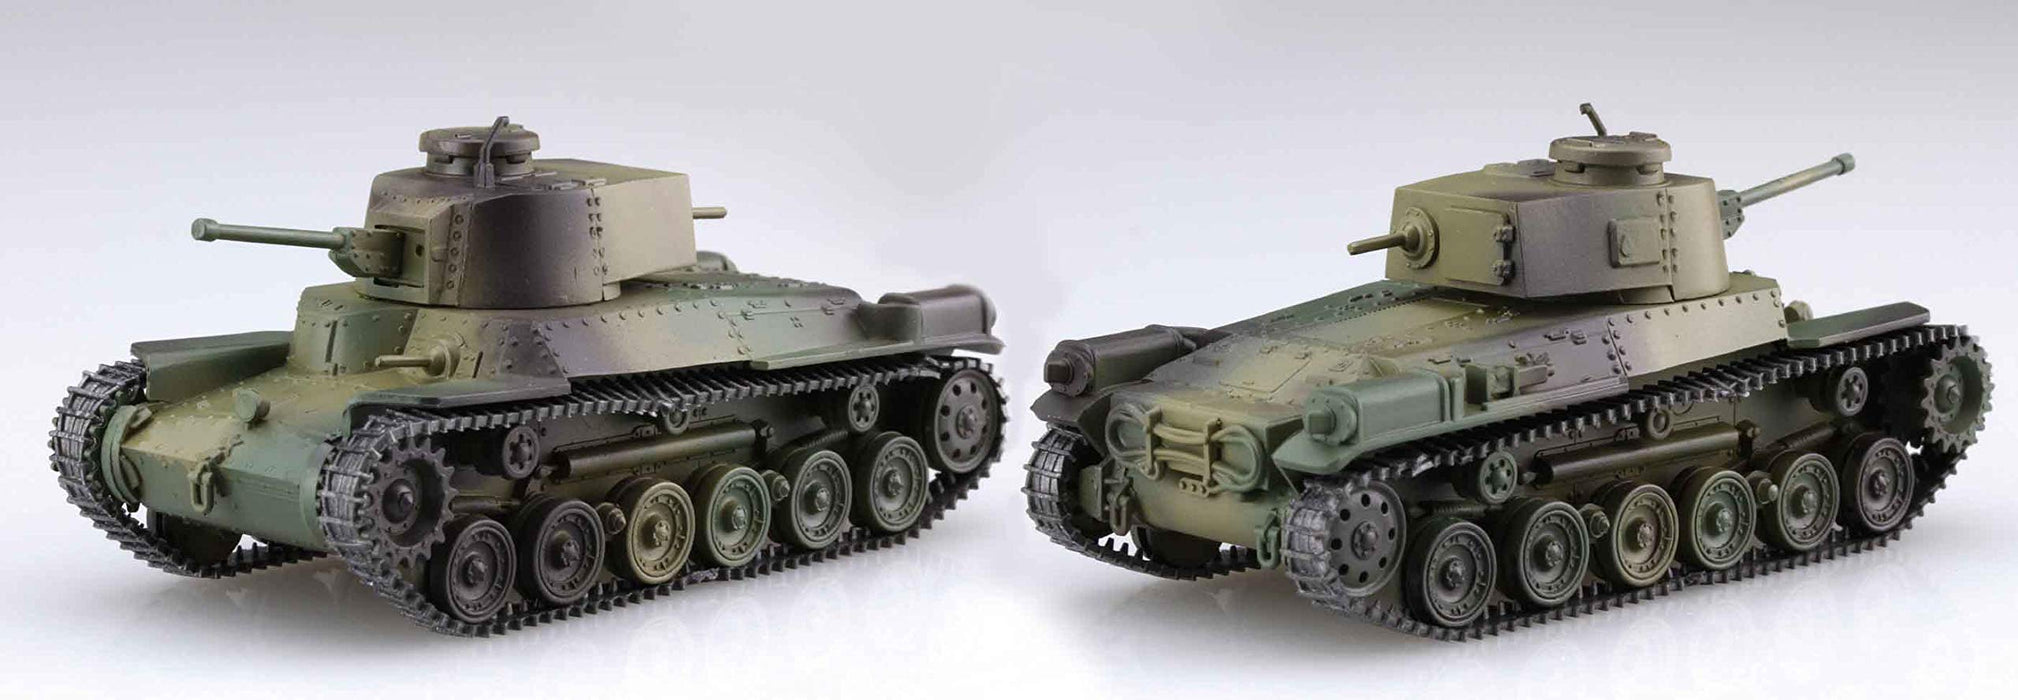 FUJIMI Special World Armor 1/76 Middle Tank Type 97 Chi-Ha Kai 2Pc Version spéciale avec modèle en plastique d'infanterie